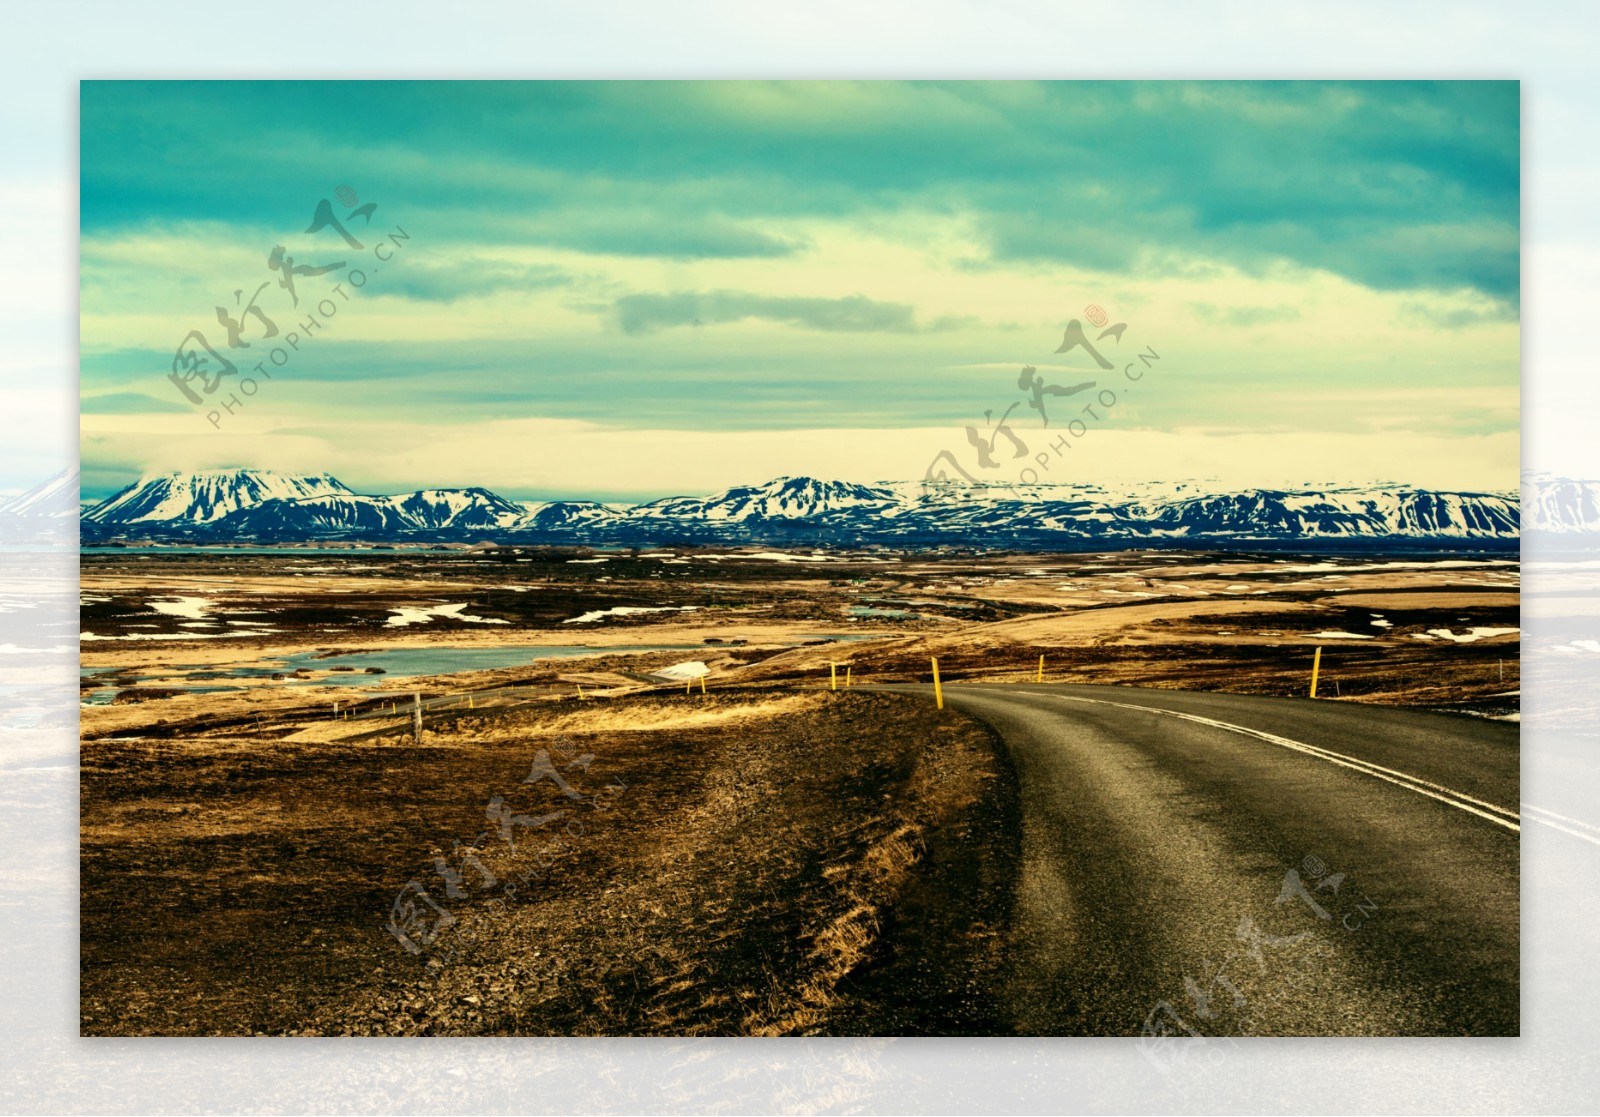 蓝天雪山公路风景图片